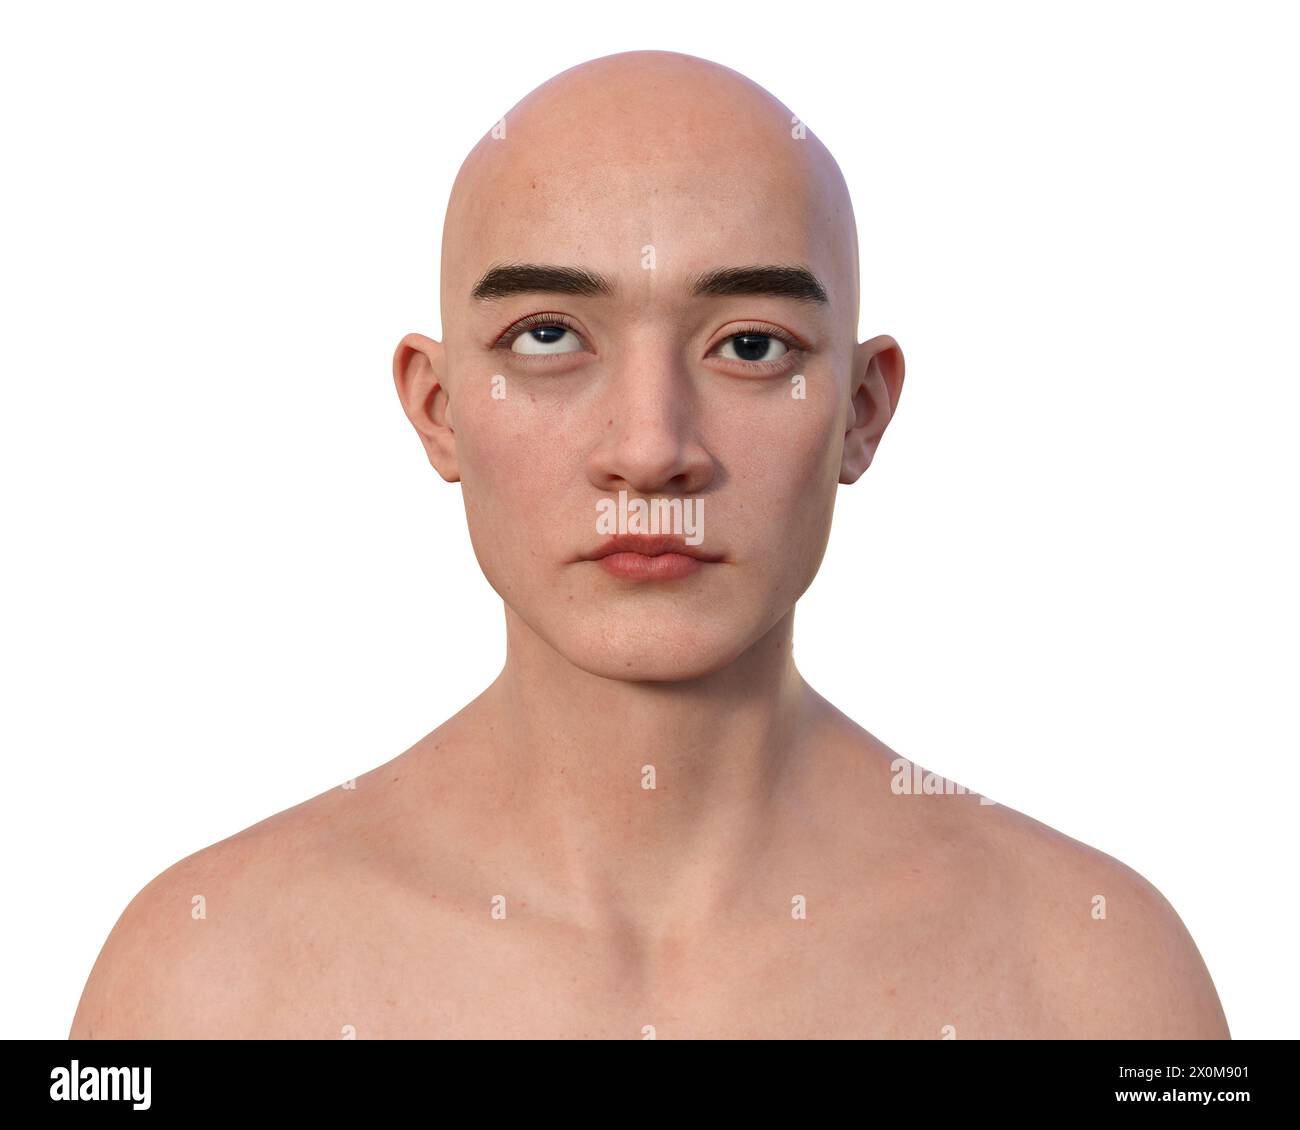 Illustration eines Menschen mit Hypotropie mit aufwärts gerichteter Augenfehlstellung. Stockfoto